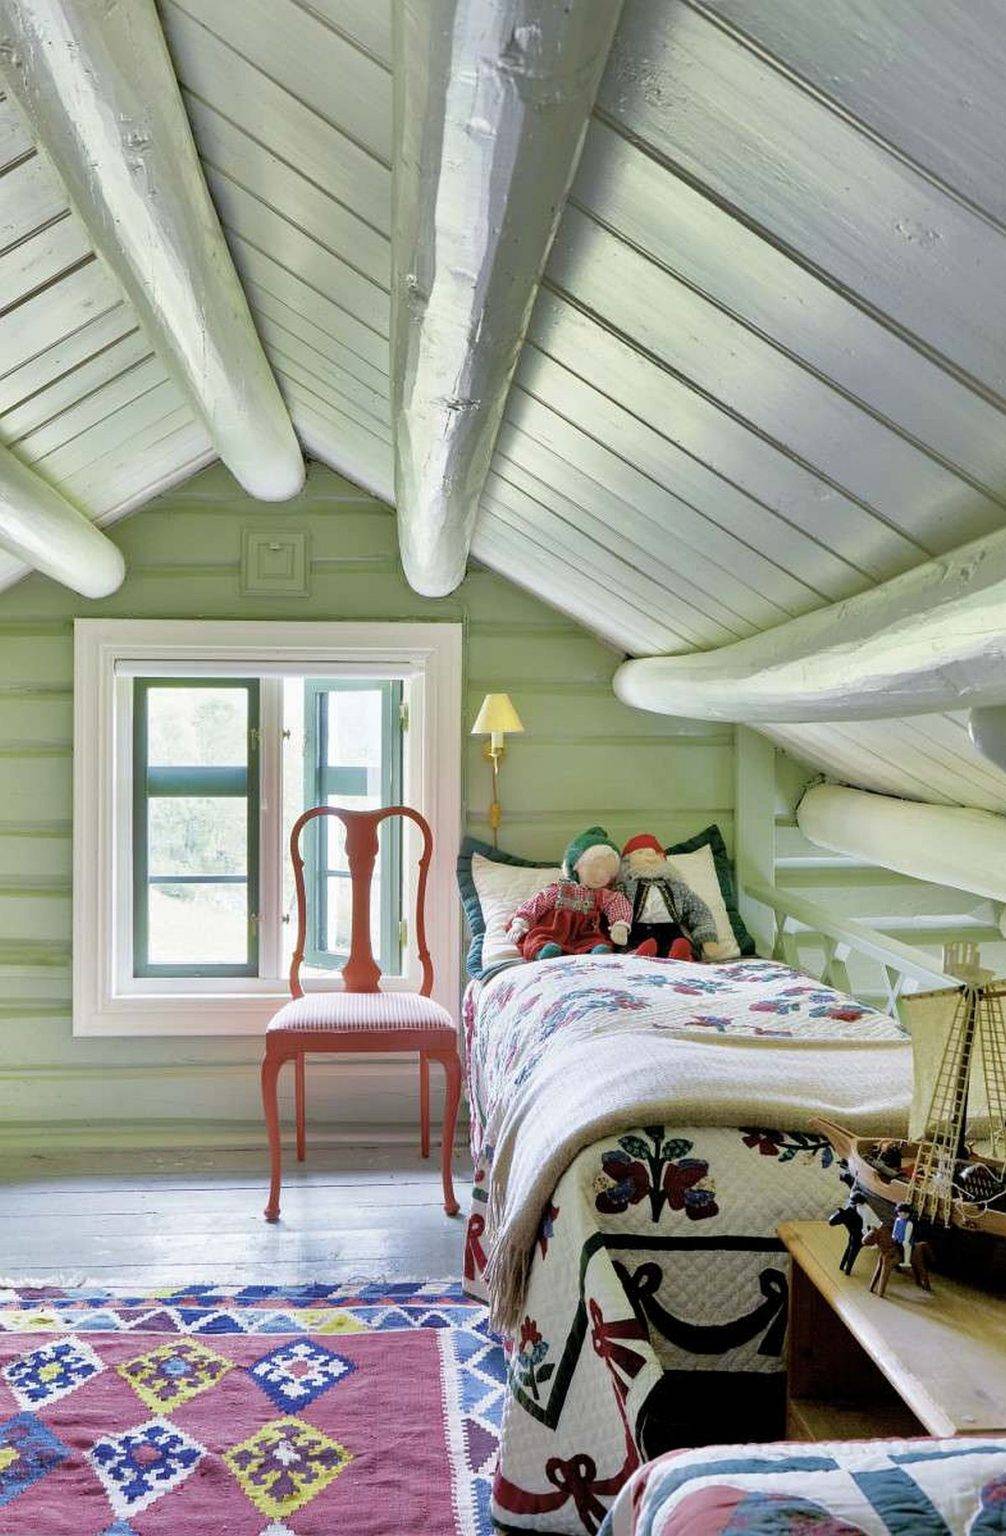 Màu xanh lá cây nhẹ nhàng làm phông nền cho phòng ngủ trẻ em trên gác mái.